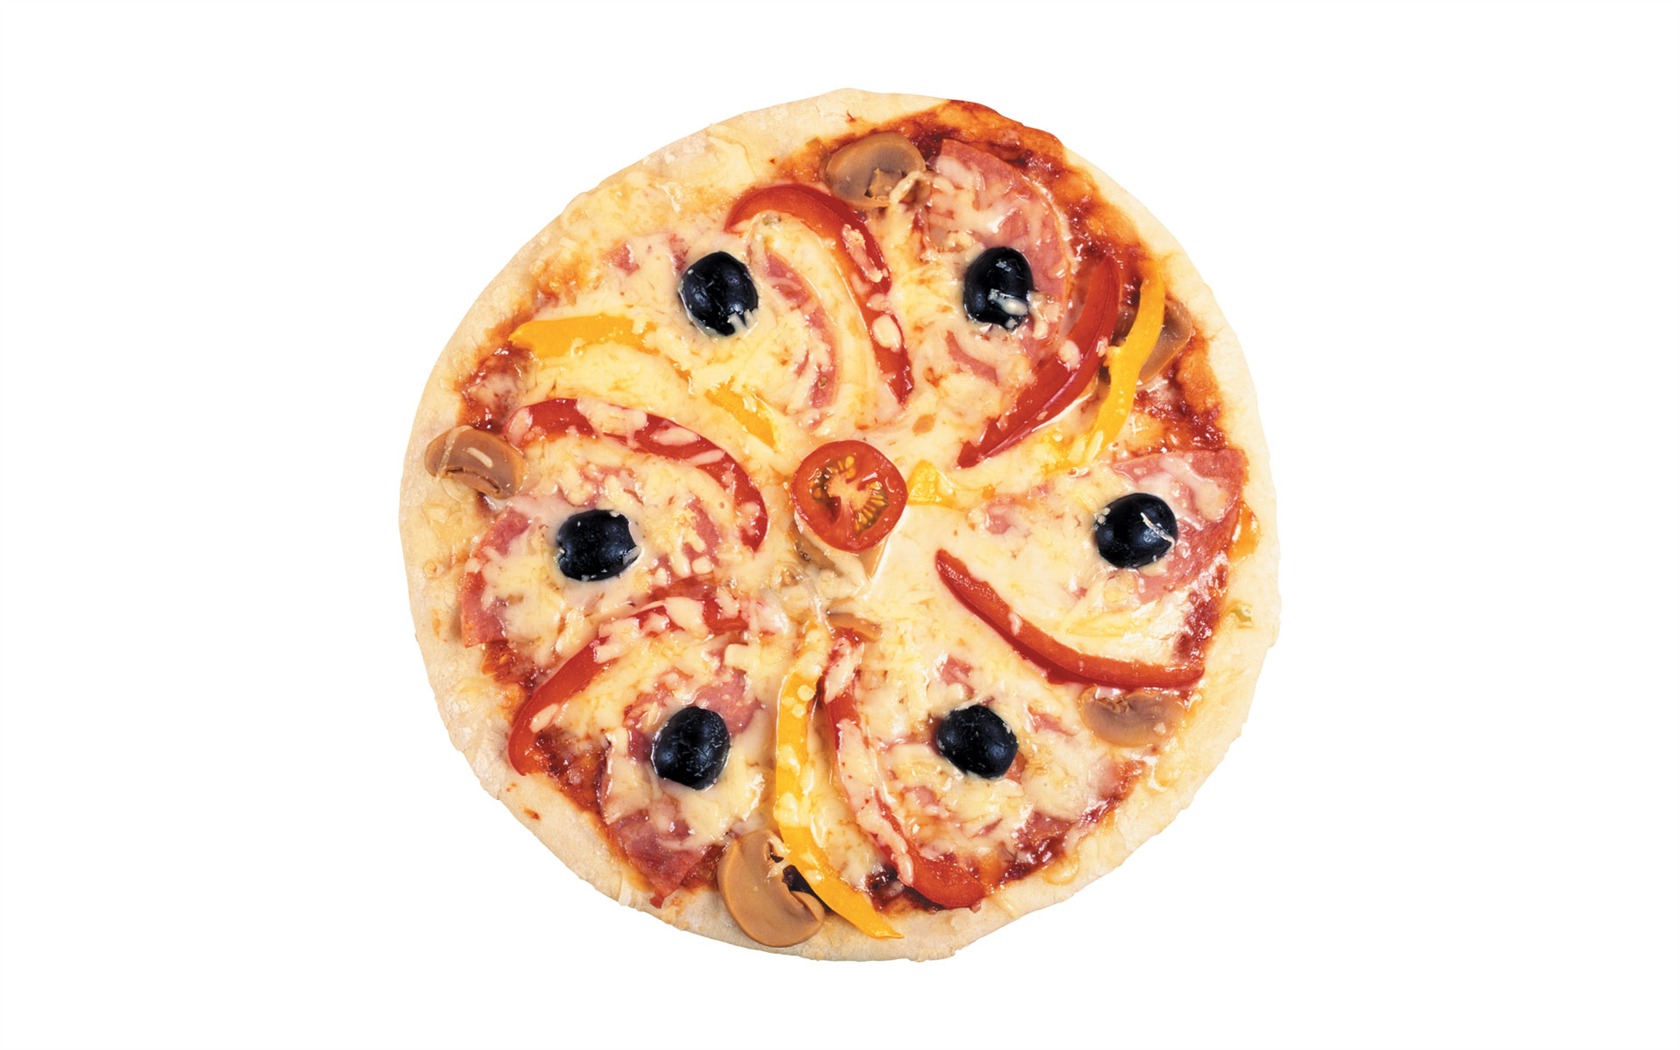 Fondos de pizzerías de Alimentos (3) #12 - 1680x1050